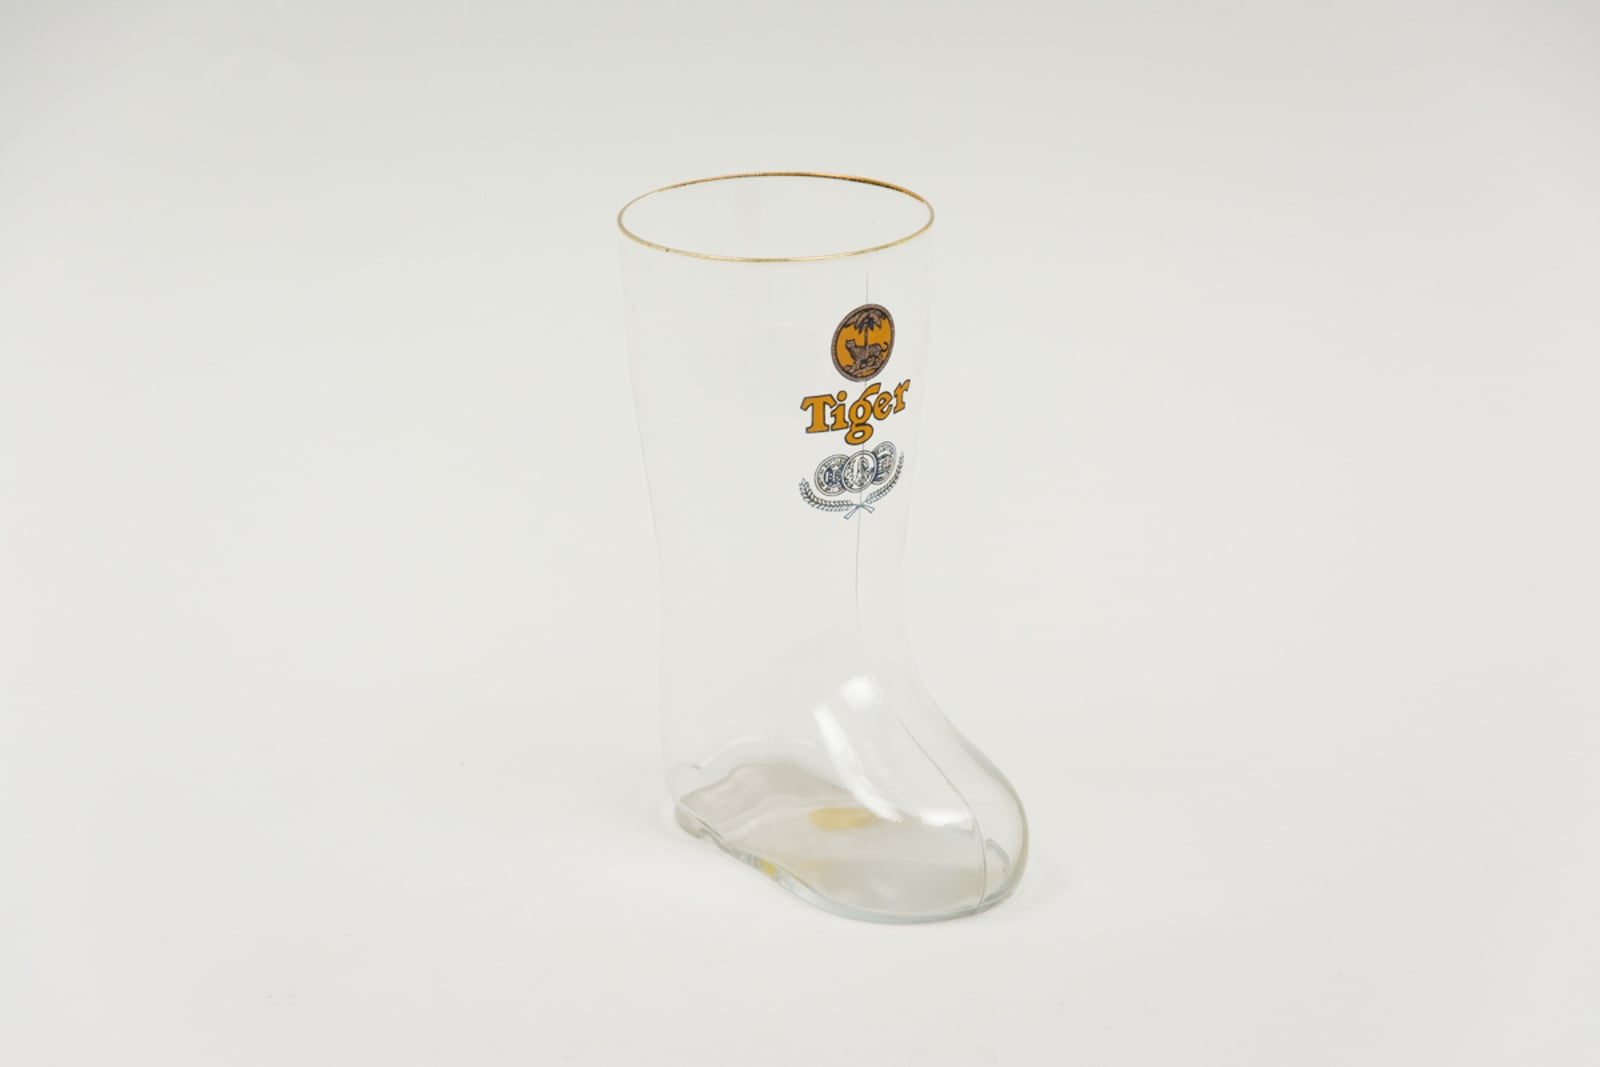 Tiger Beer 3 Medal Boot Glassware